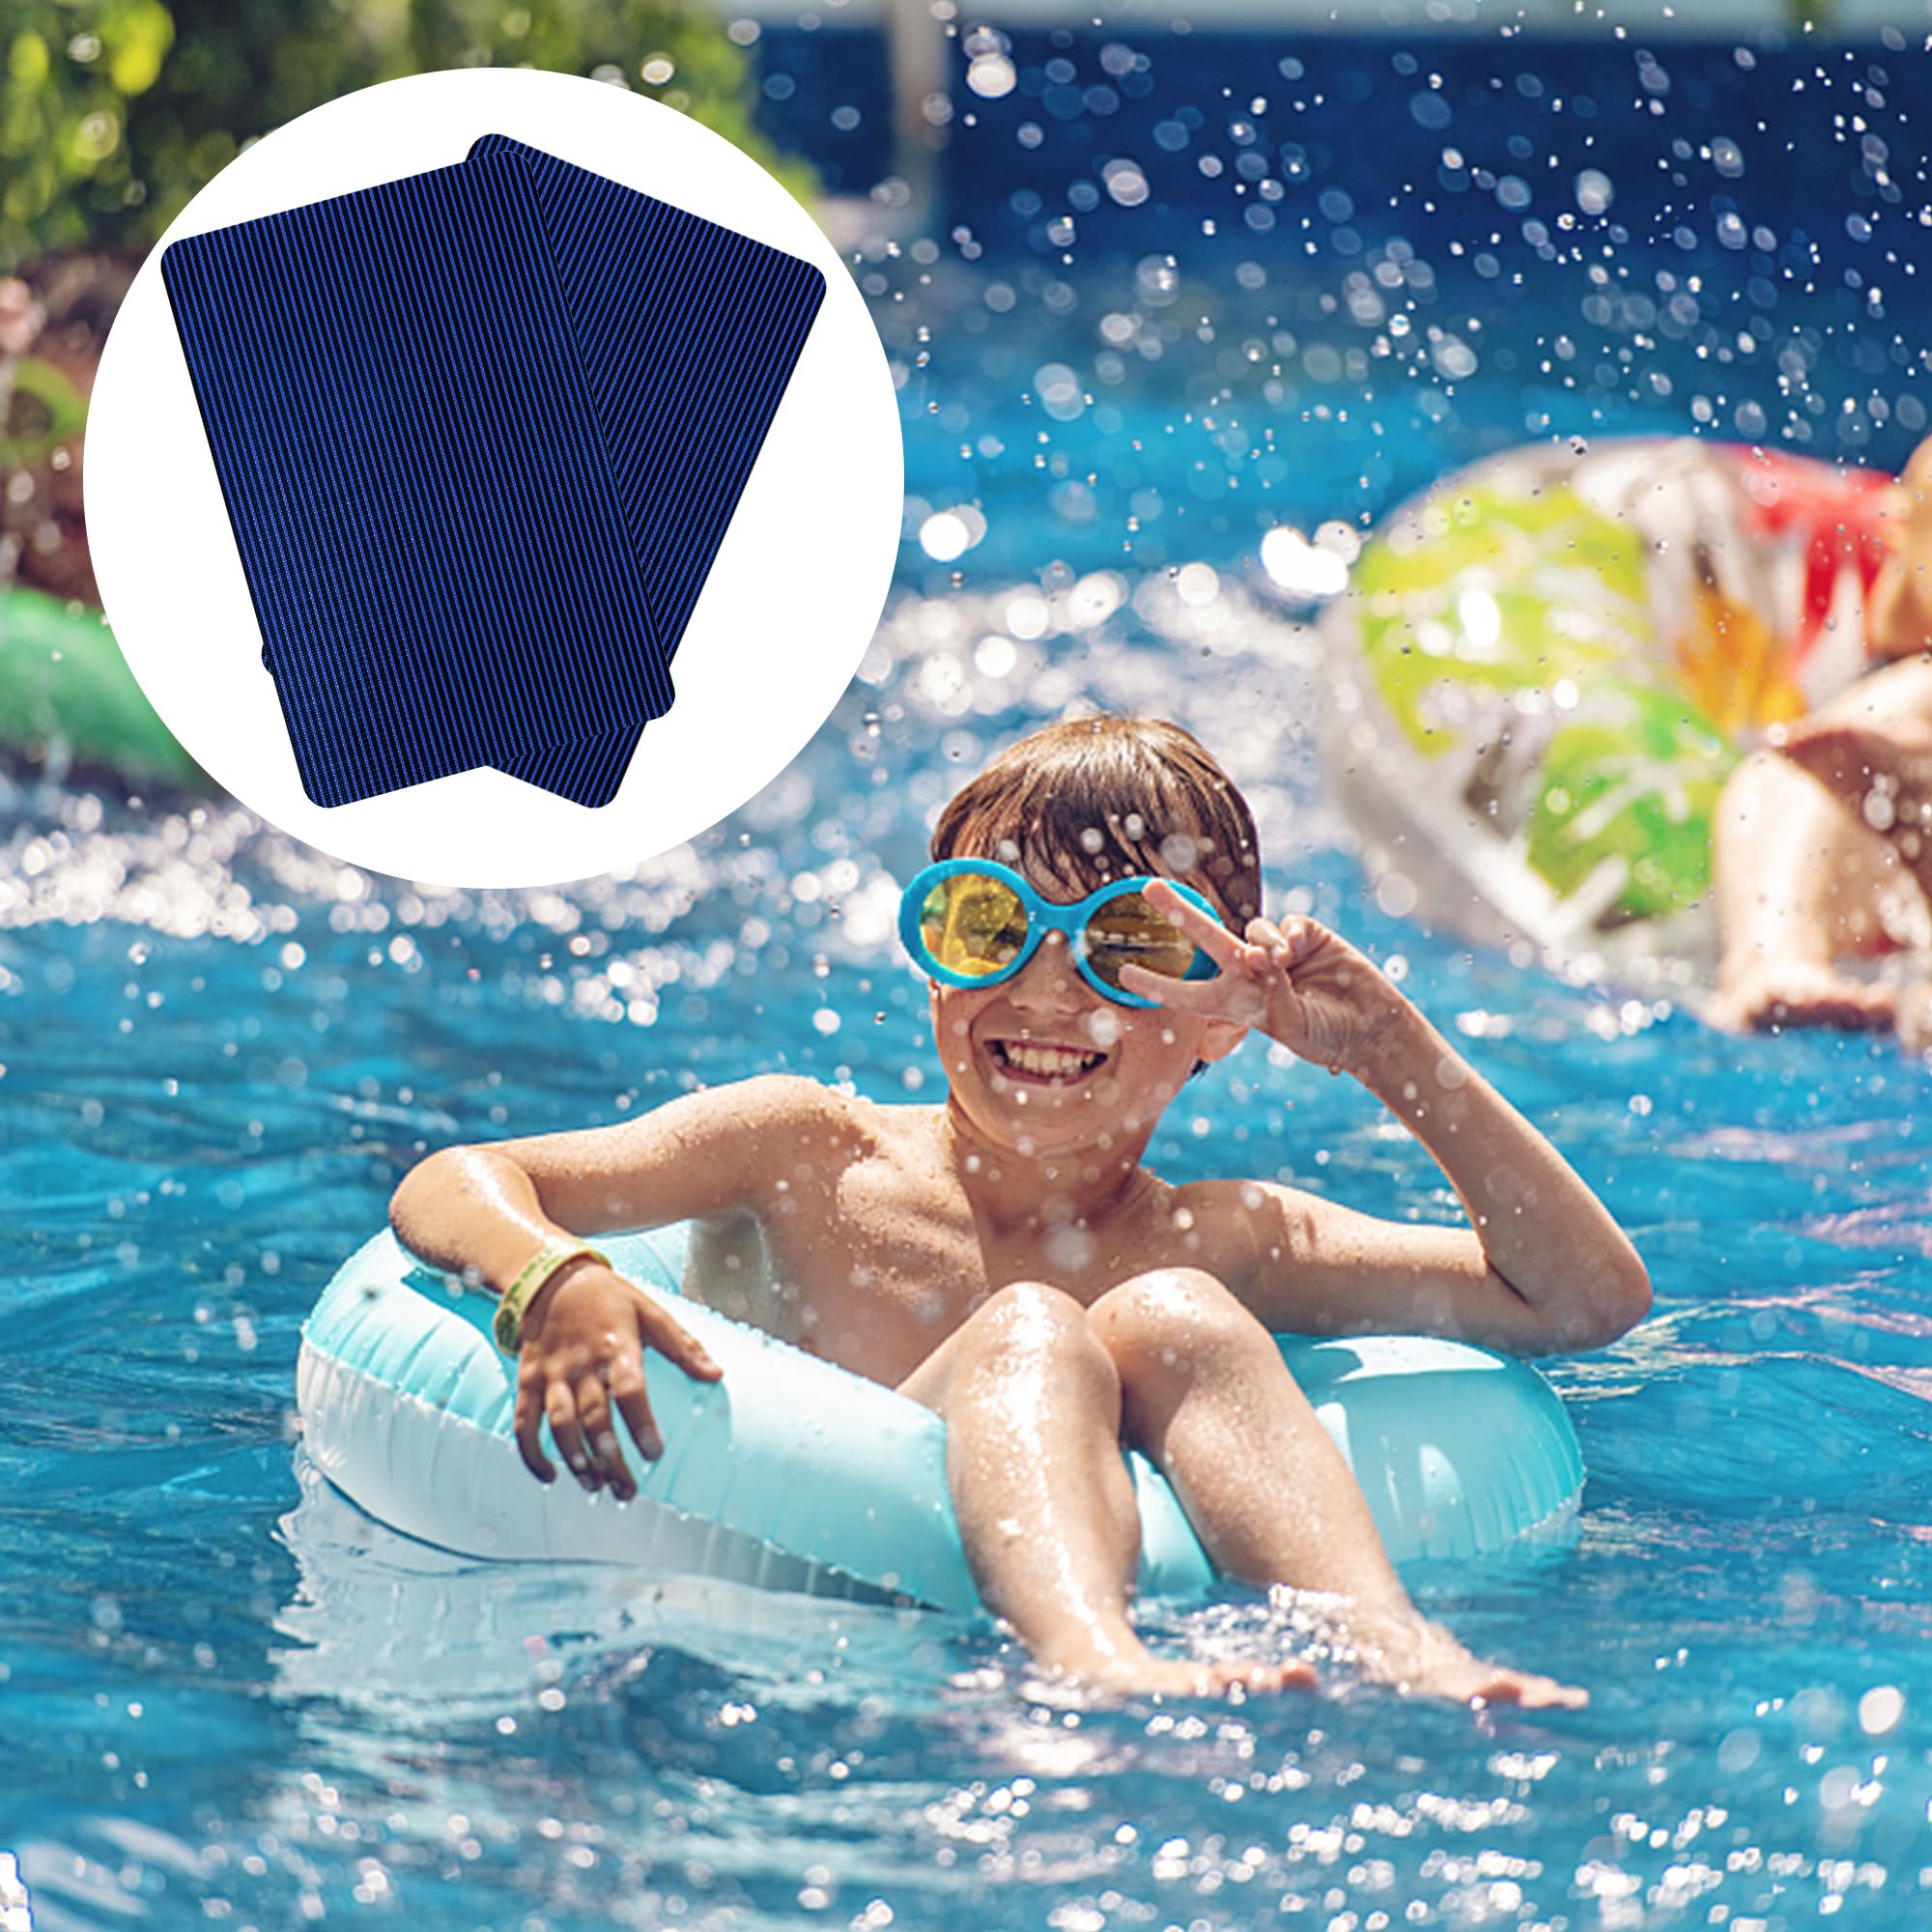 Lfutari 6pcs Swimming Pool Cover Repair Kit - Blue Pool Safety Cover Patch Kit - Self-Adhesive Mesh Pool Cover Saver Patch Kit for Inground Safety Pool Cover (2pcs 12x8 inch+4pcs 4X8 inch)